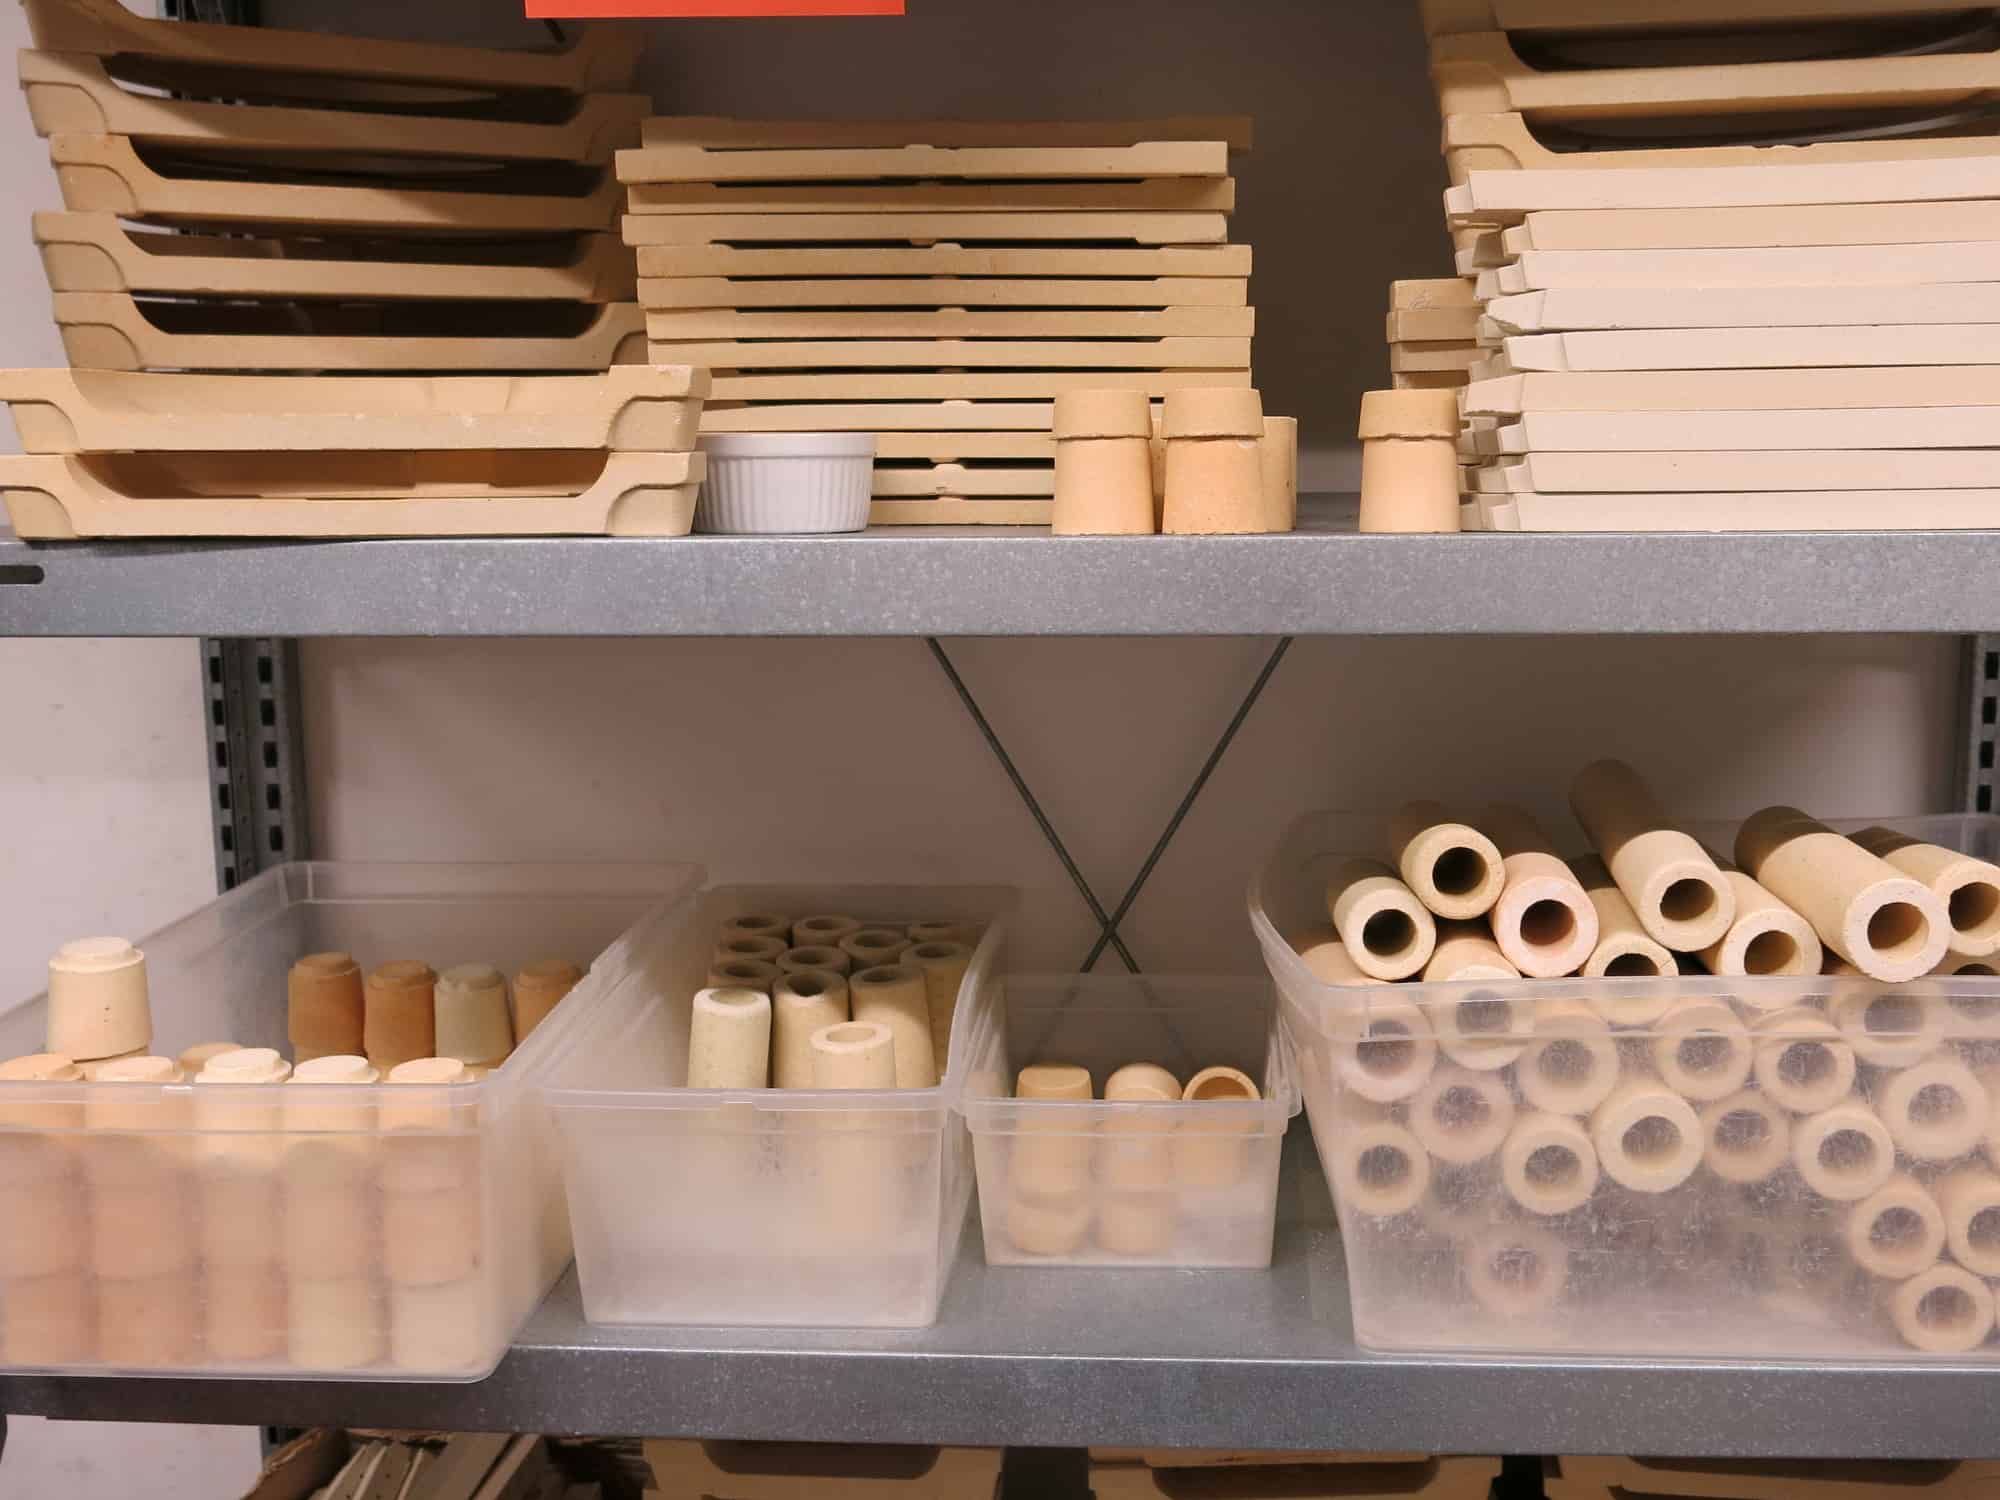 Werkstatt Porzellan im Hinterhof Schamottteile für die Ofenbeladung